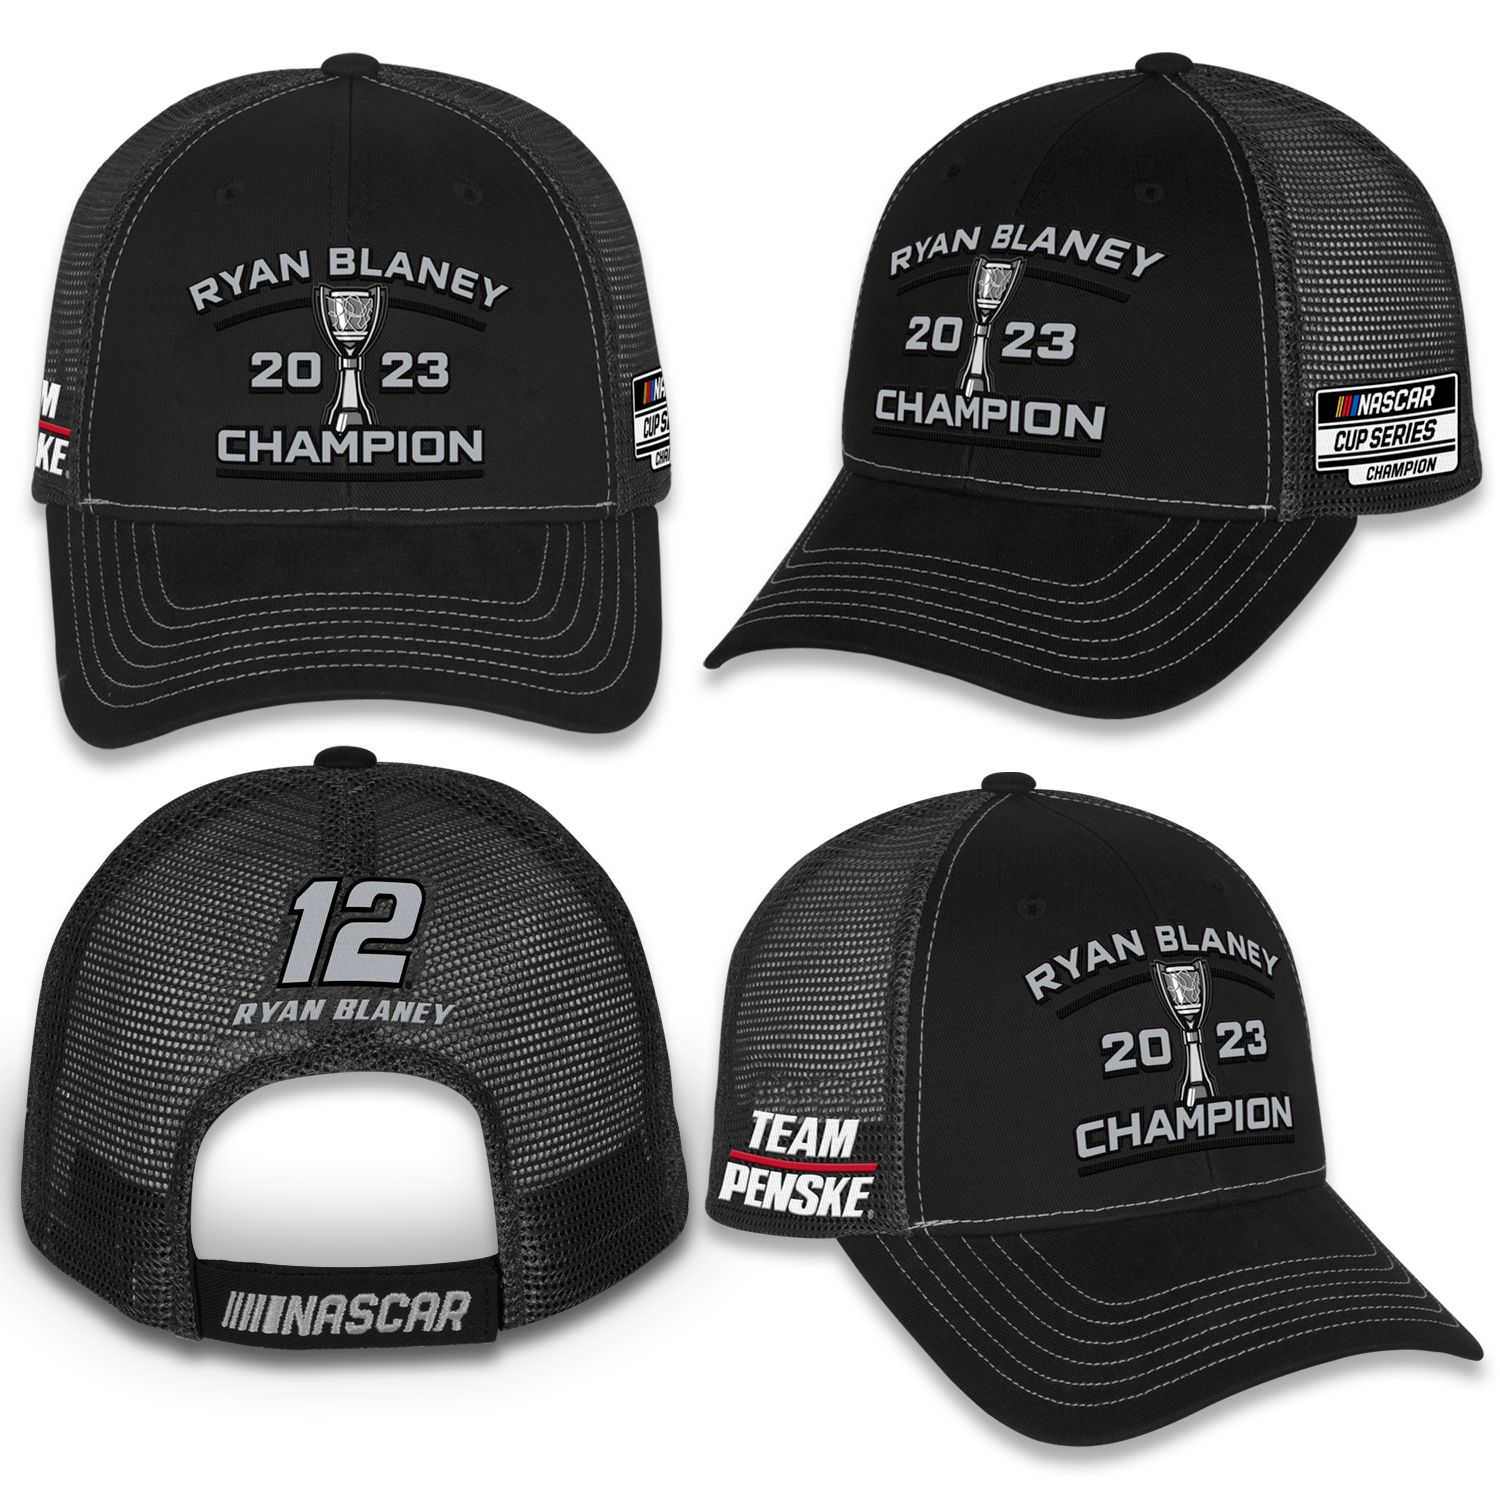 2023 Ryan Blaney Menards "Nascar Series Champion" mesh cap